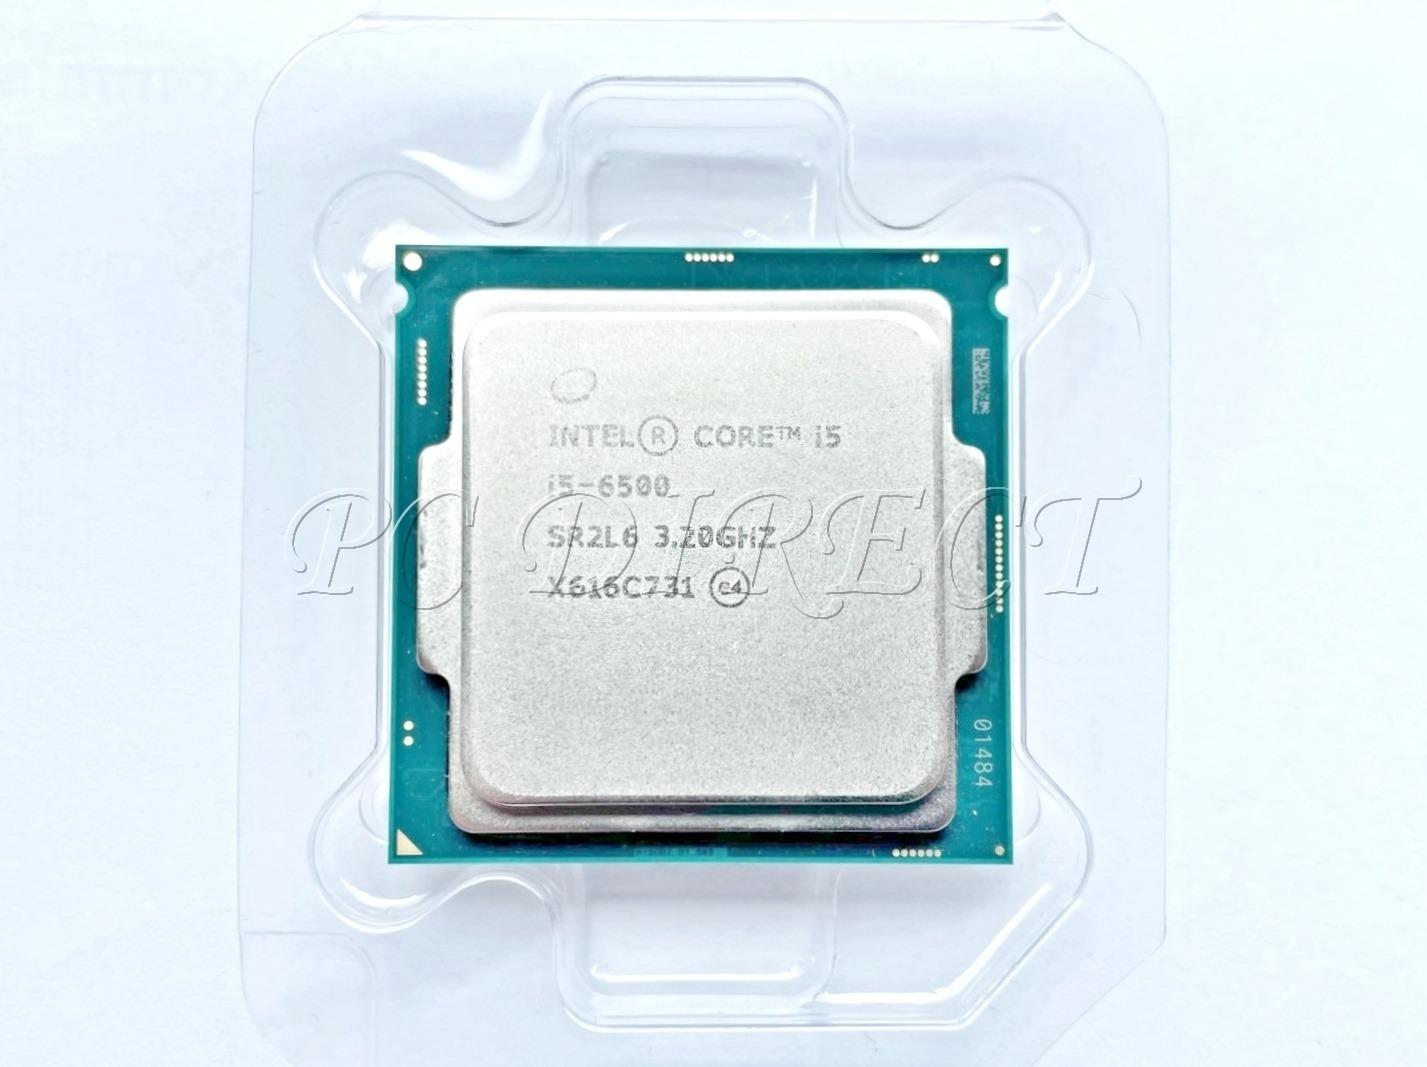 Procesor Intel Core i5-6500 - 4C/4T až 3,6 GHz - Socket 1151 - Počítače a hry